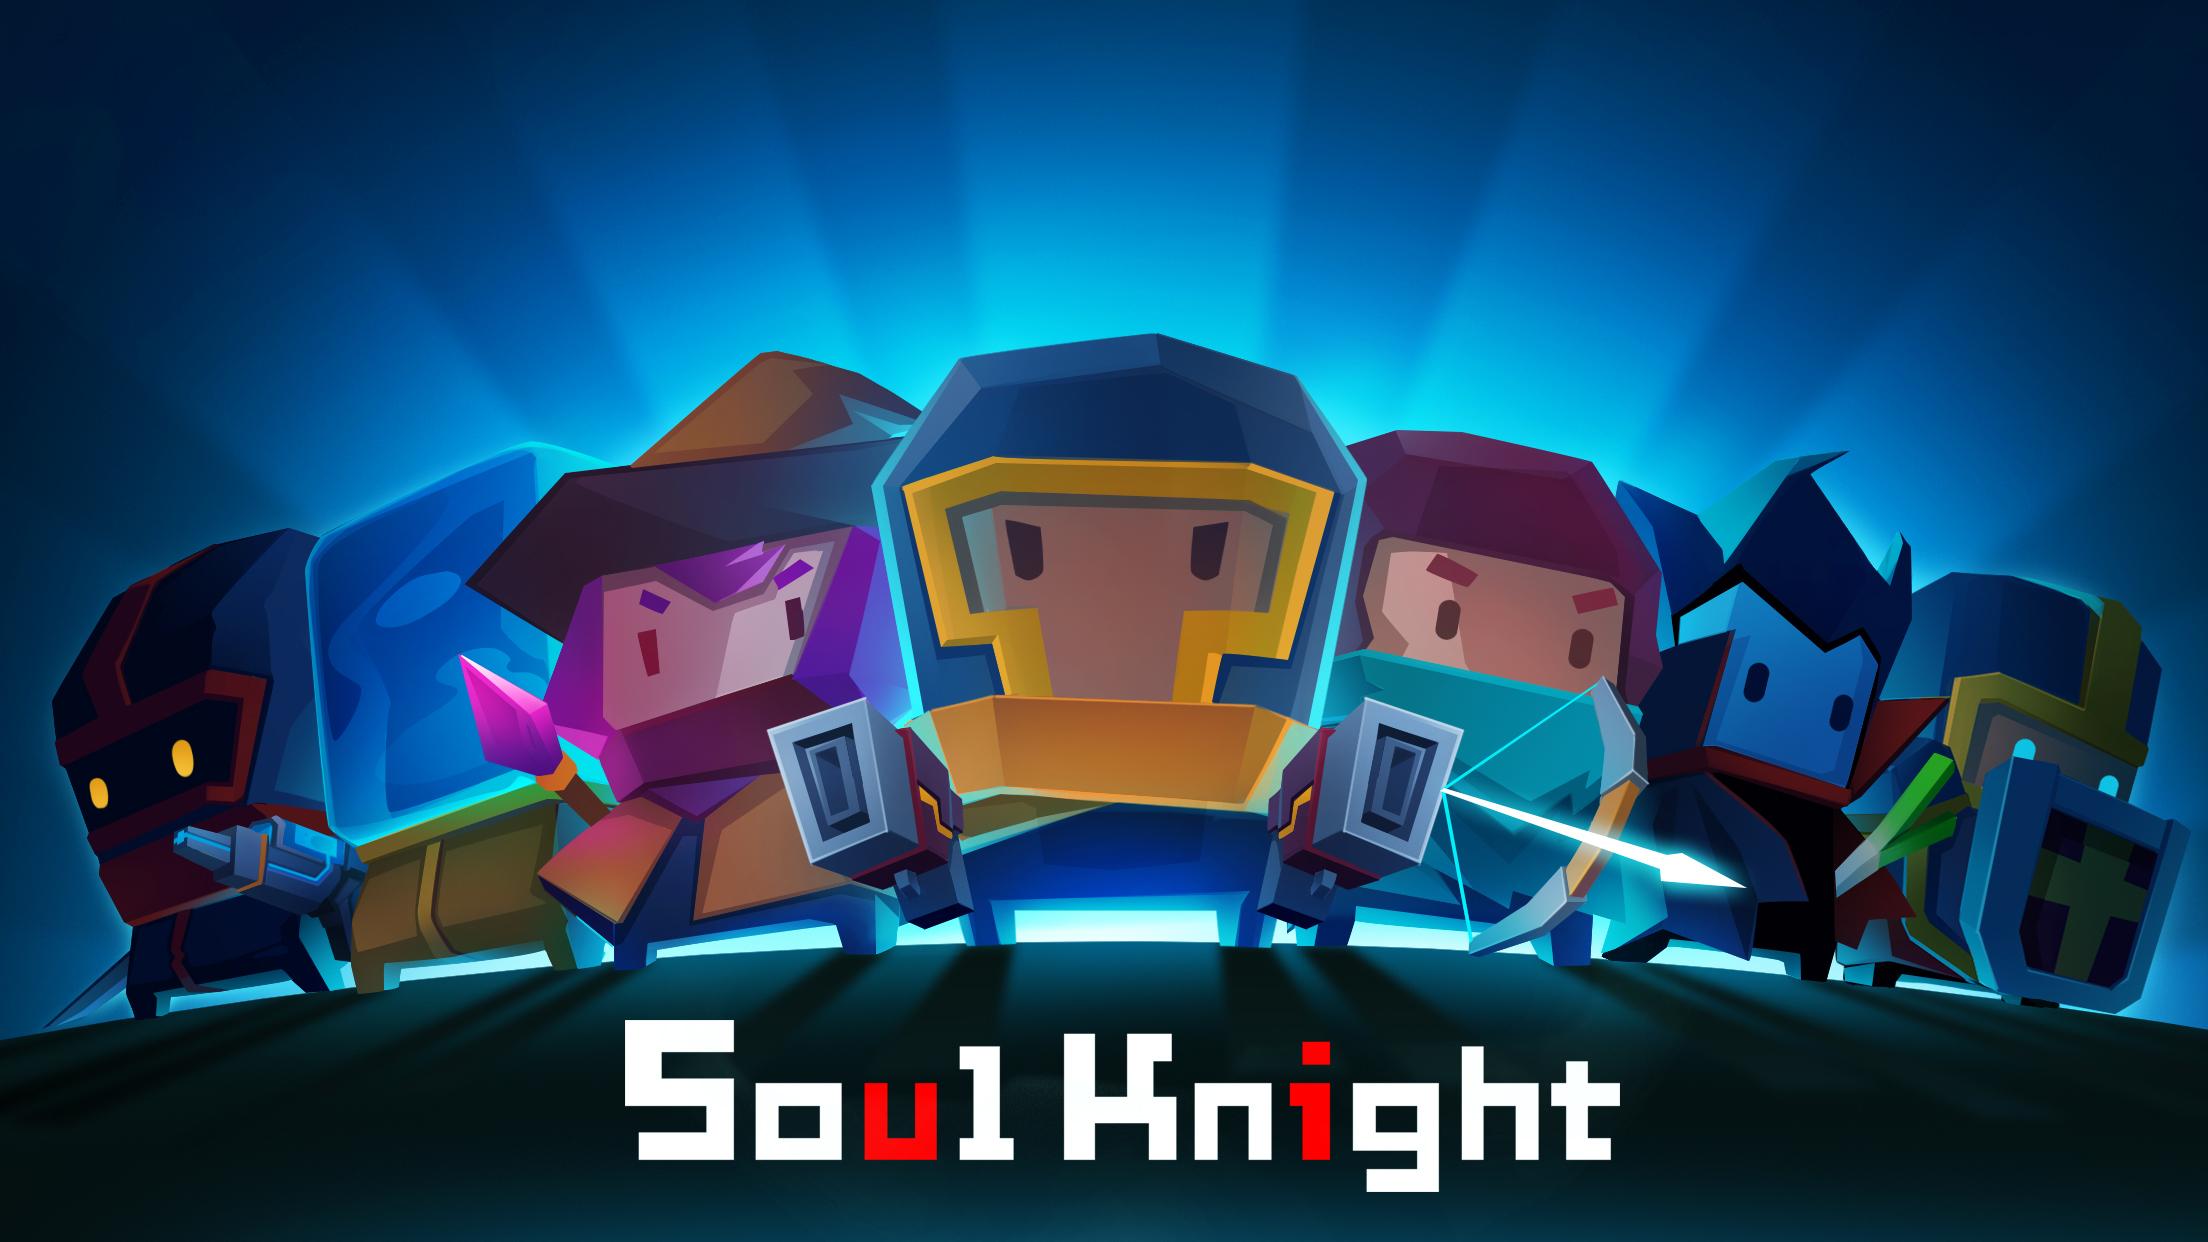 元气骑士 soul knight游戏评测20170616001